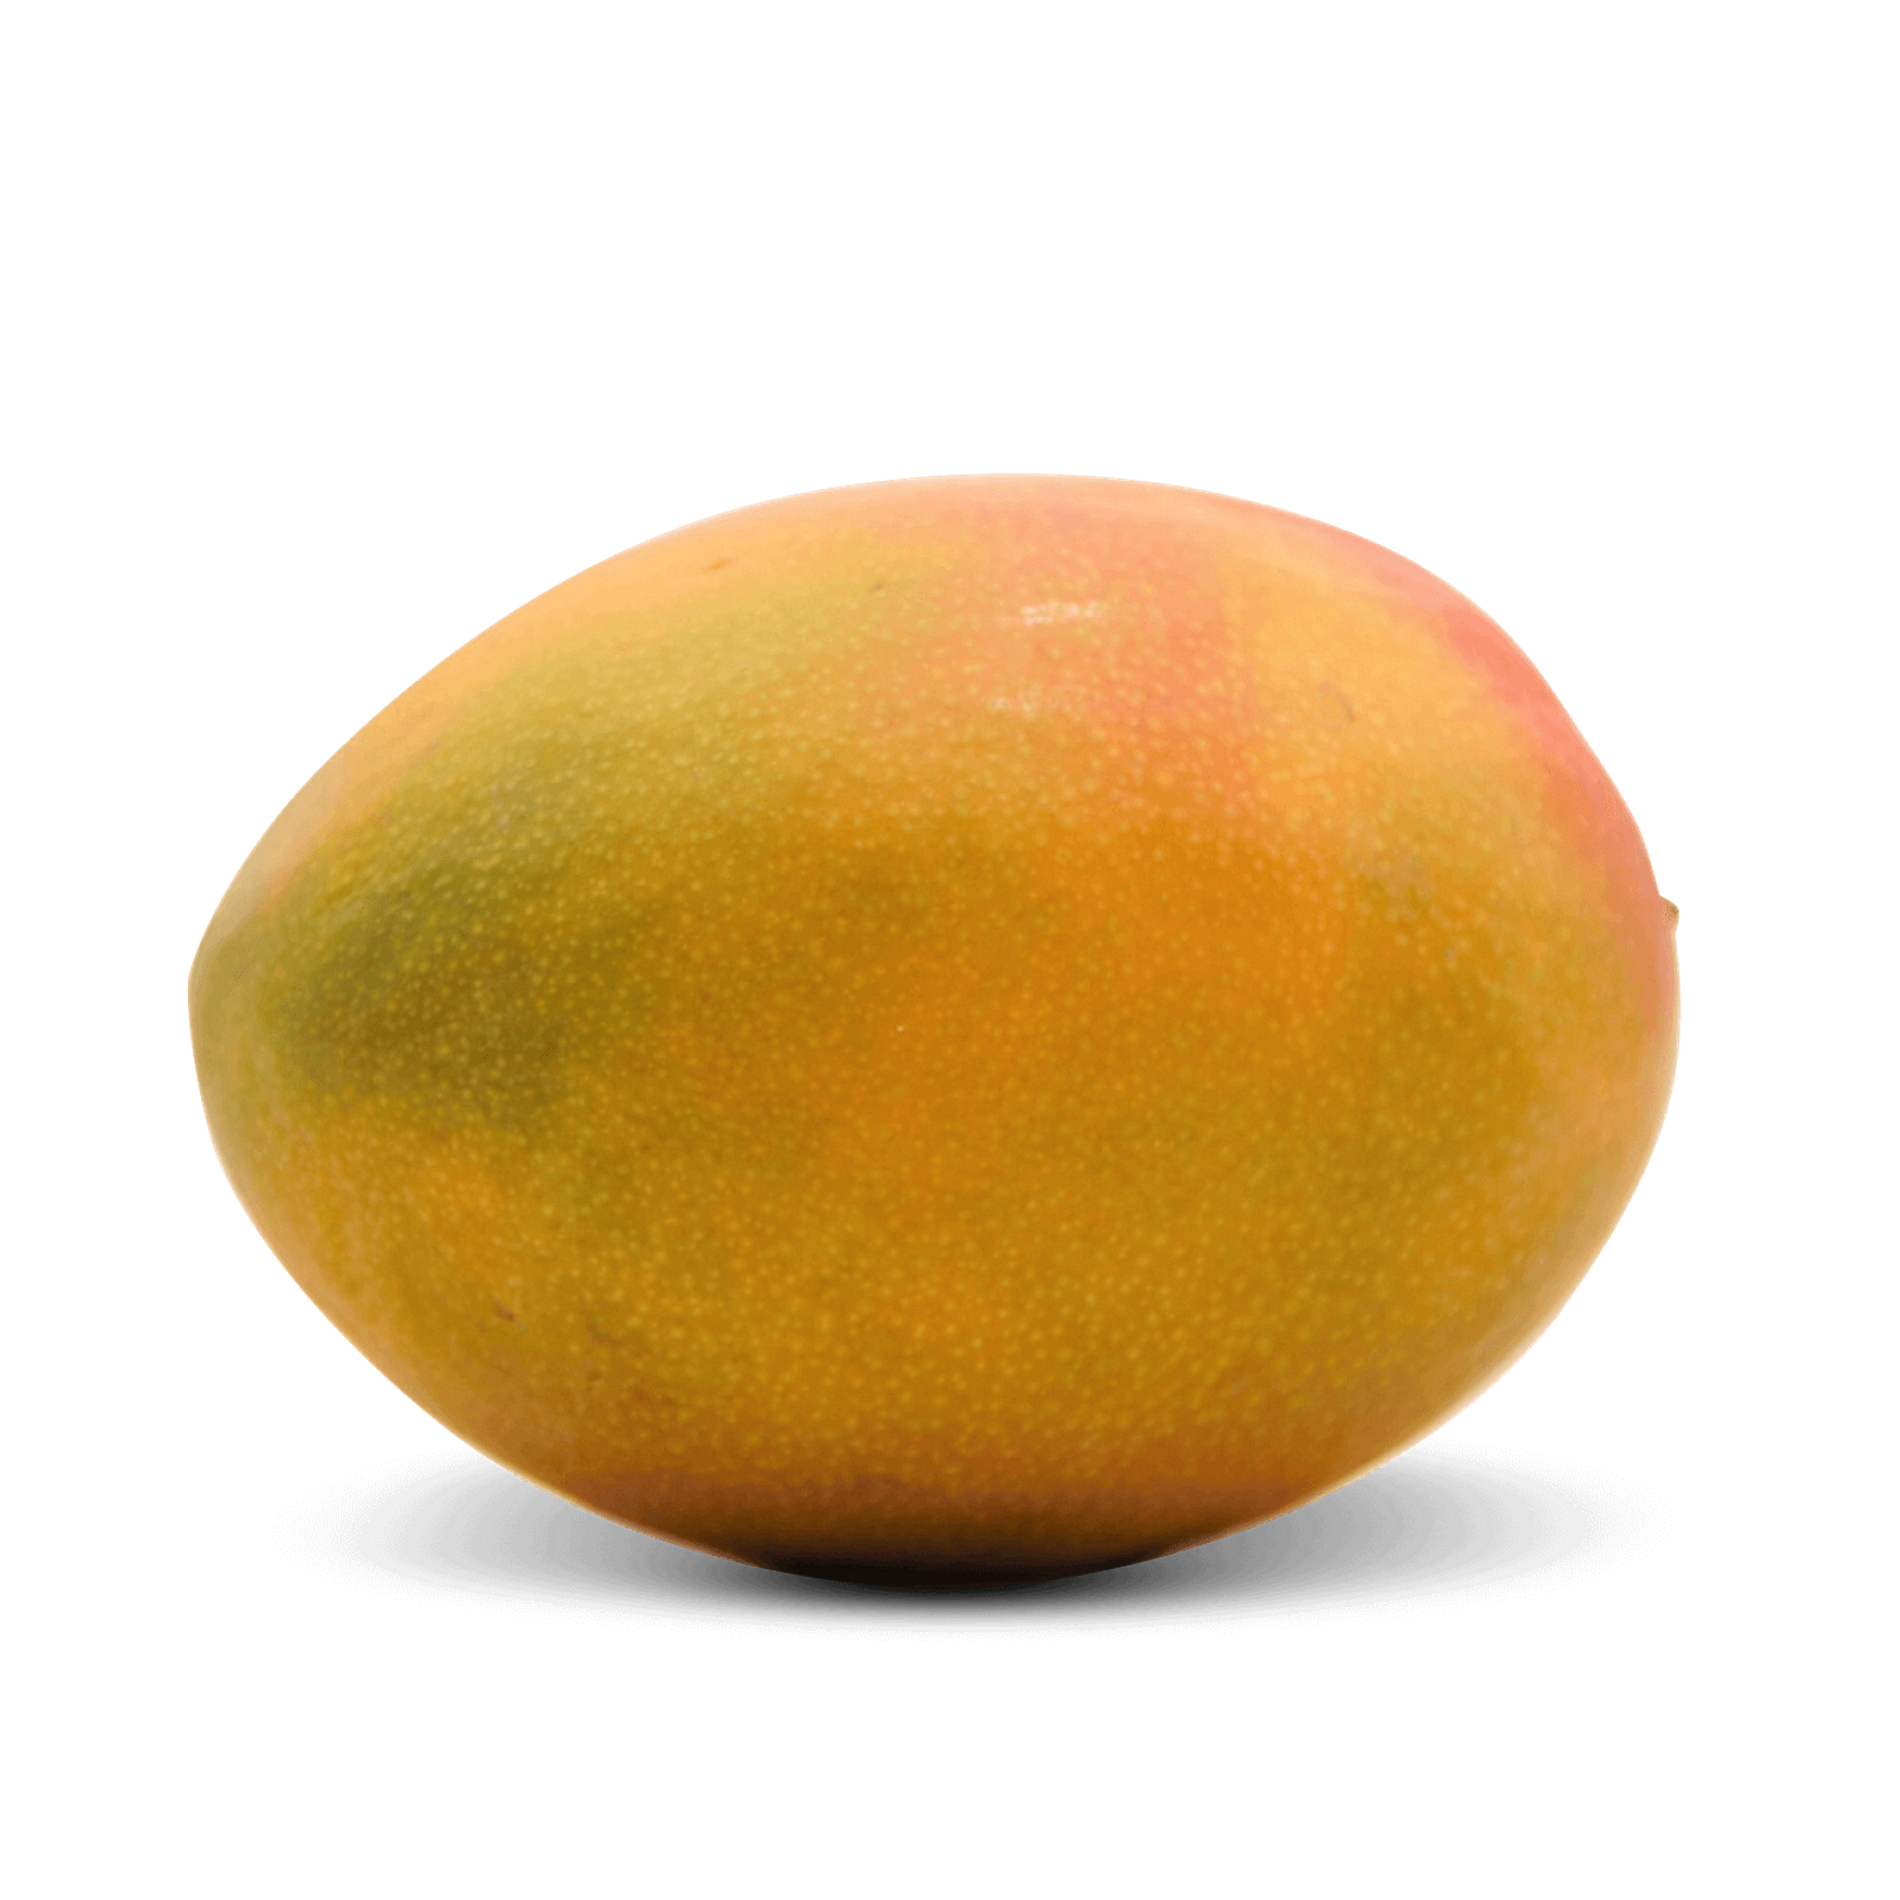 Mango 'Flugware'